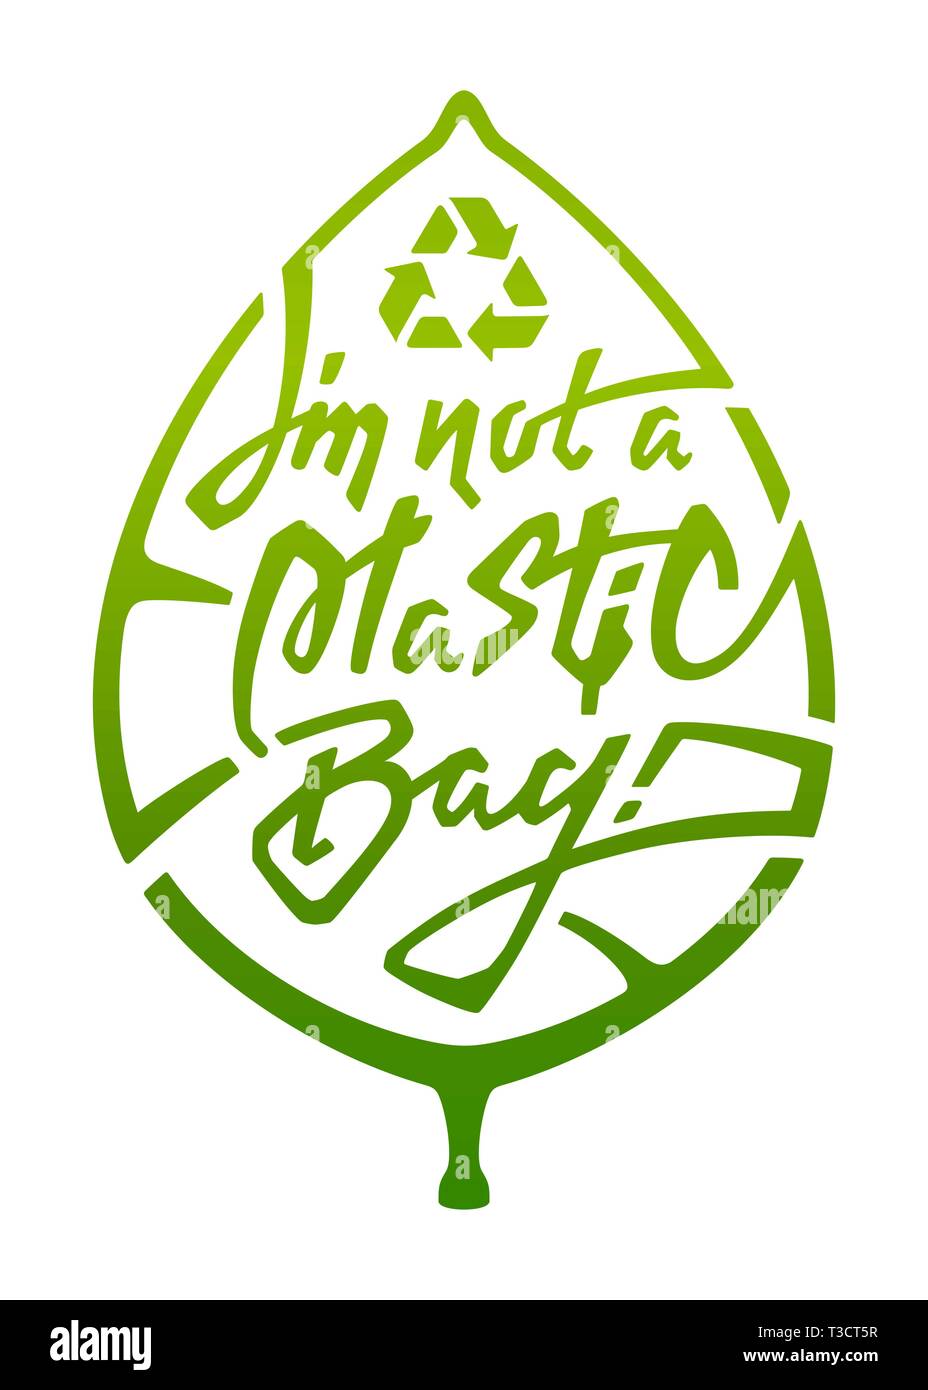 Logo. Borsa, lettering. Ecologici. Ambientali, icona di riciclaggio. Etichetta verde. Alimenti biologici e naturali, bio. Problema di plastica. Ambientali Illustrazione Vettoriale